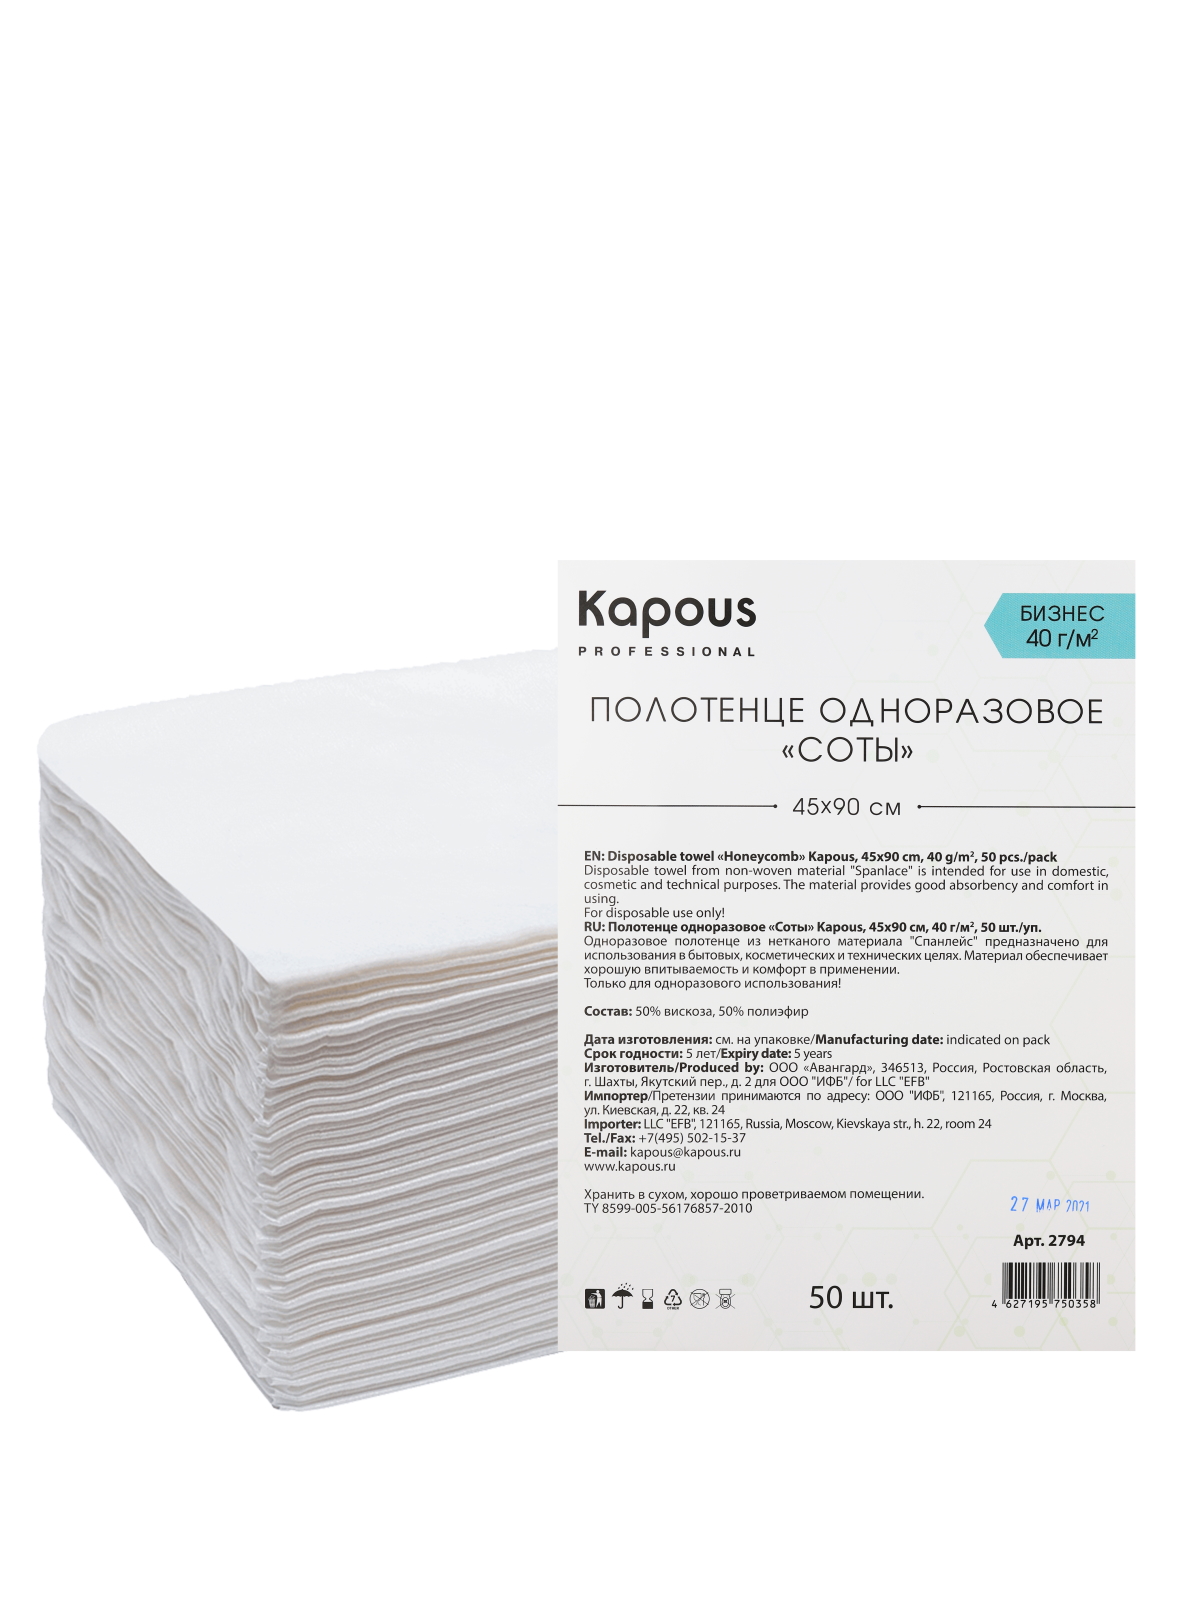 Купить Полотенце одноразовое KAPOUS PROFESSIONAL соты в сложении 45 х 90 см 40г/м2 50 шт